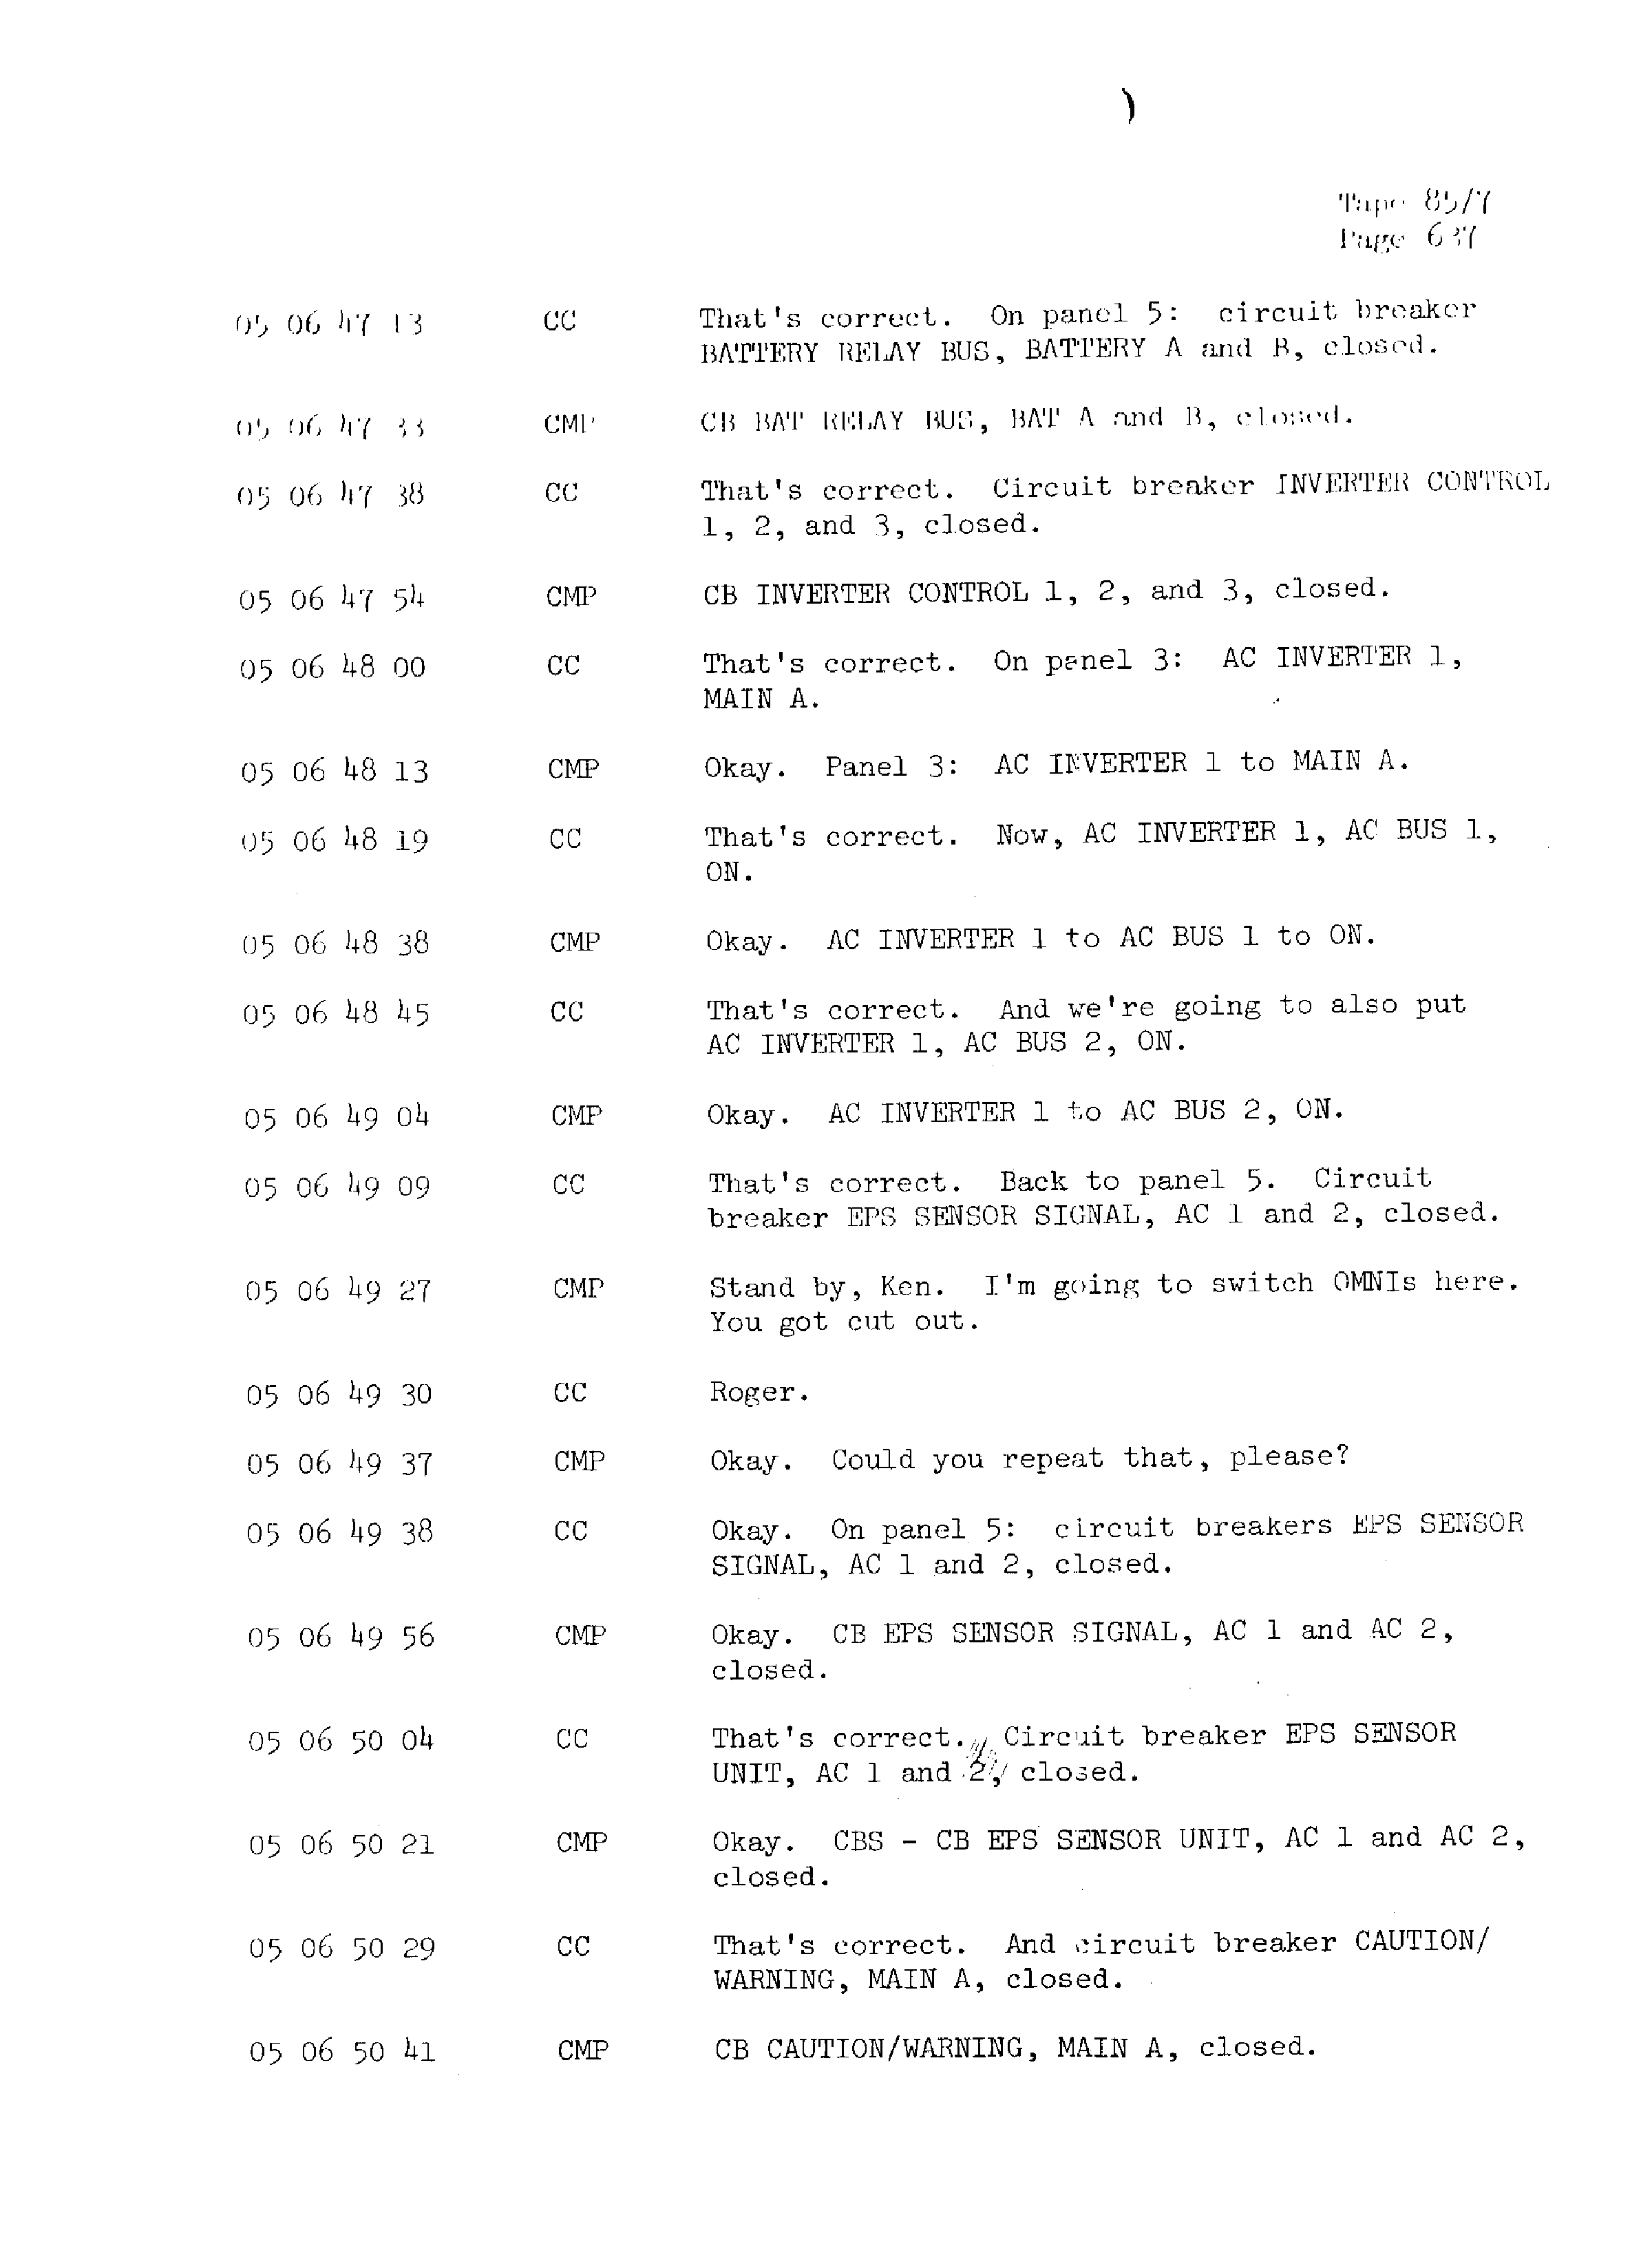 Page 644 of Apollo 13’s original transcript